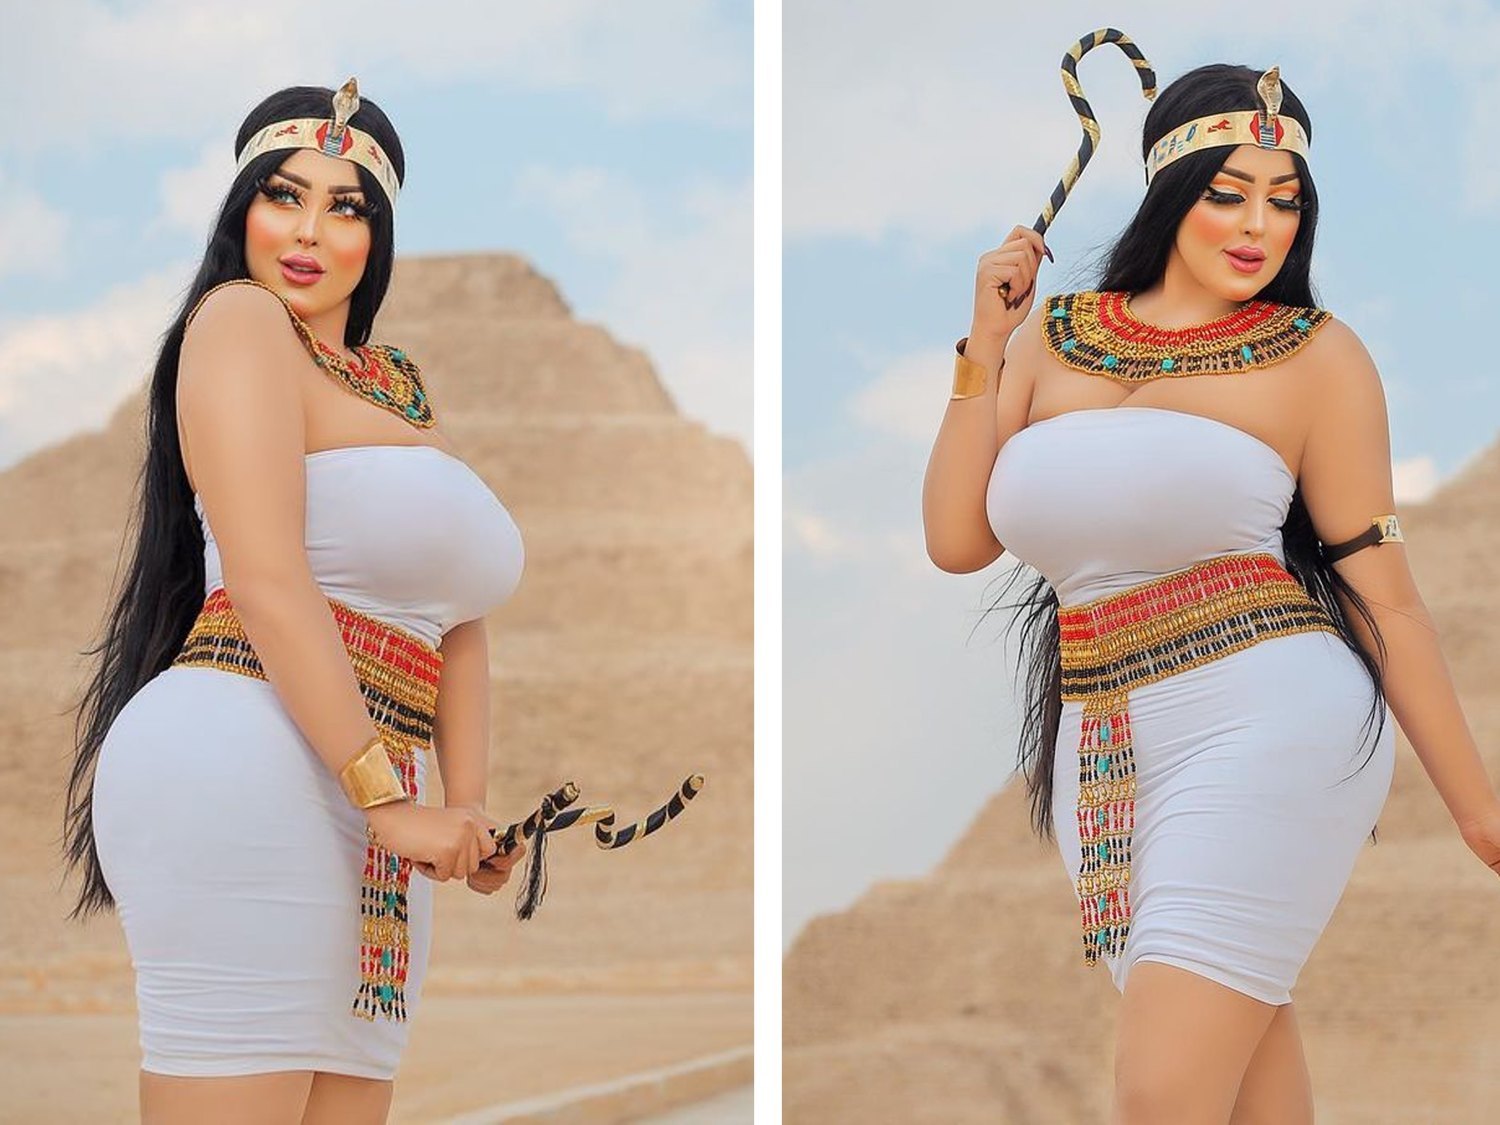 Encarcelan a una modelo e influencer egipcia por posar de forma "indecente" frente a una pirámide